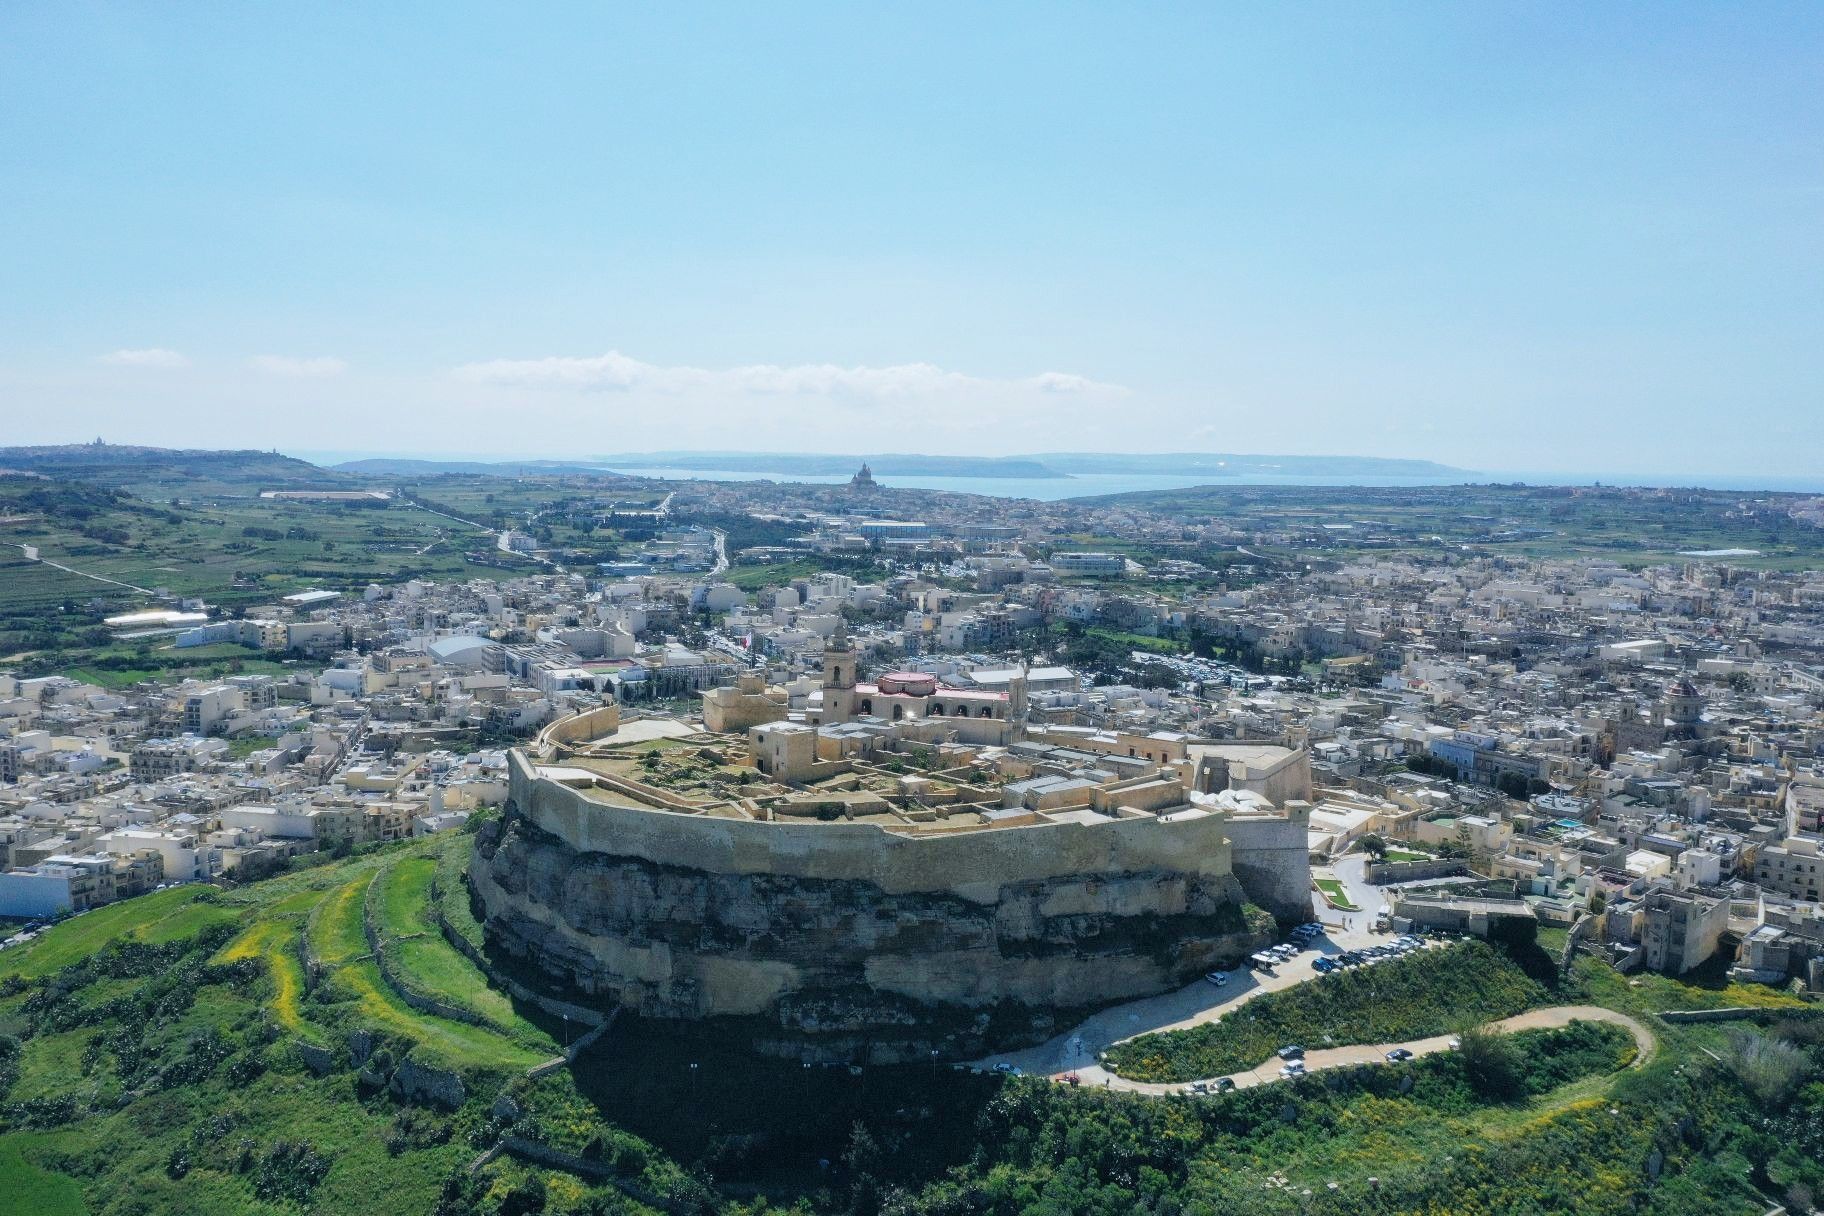 马耳他这个岛国原先的首都  姆迪纳城 权力的游戏第一季拍摄地，听说后来因为马耳他政府怕拍摄破坏他们原